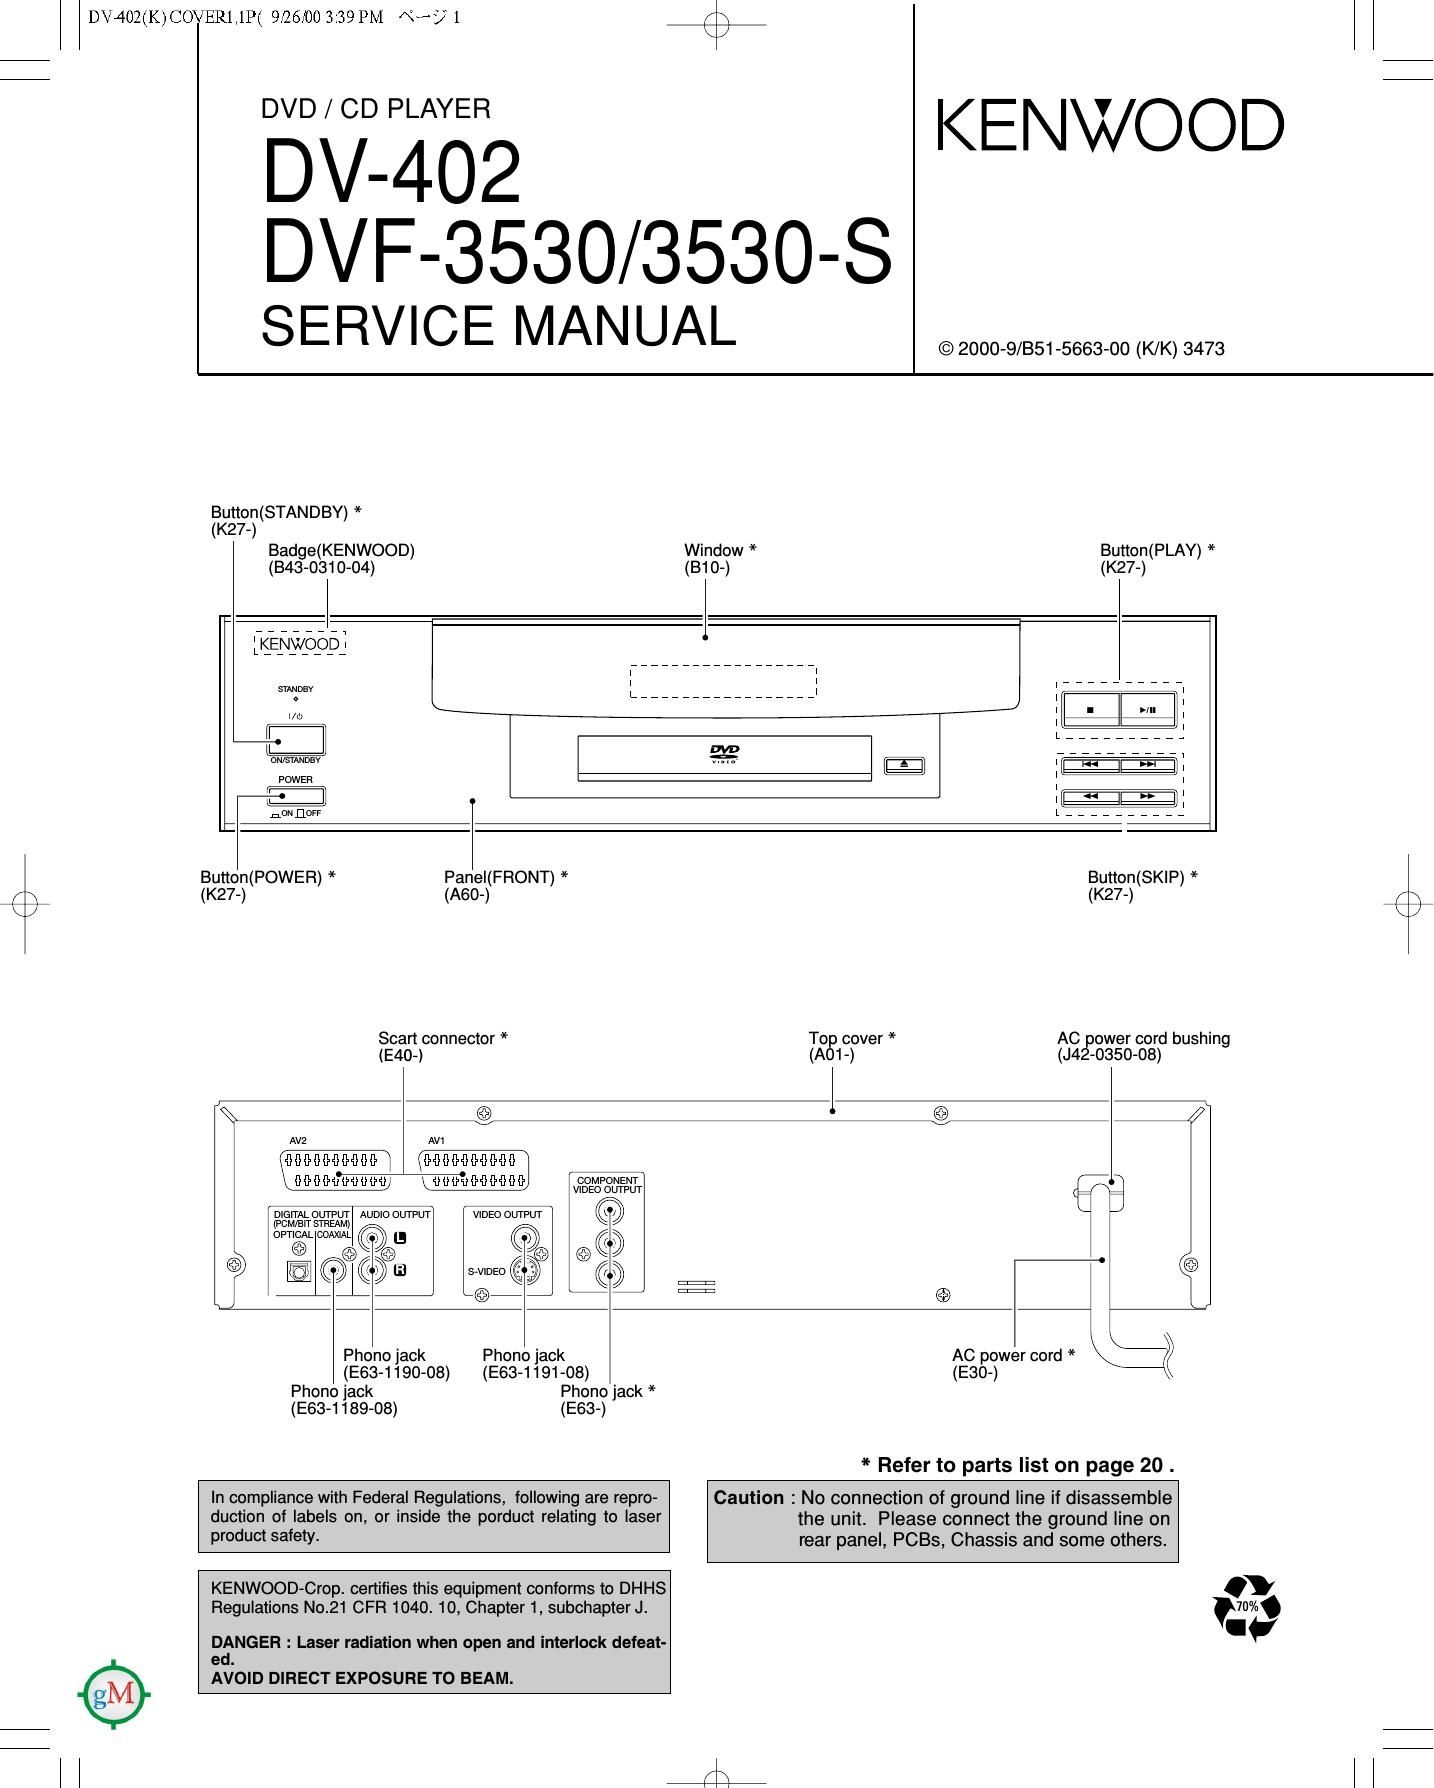 Kenwood DVF 3530 Service Manual